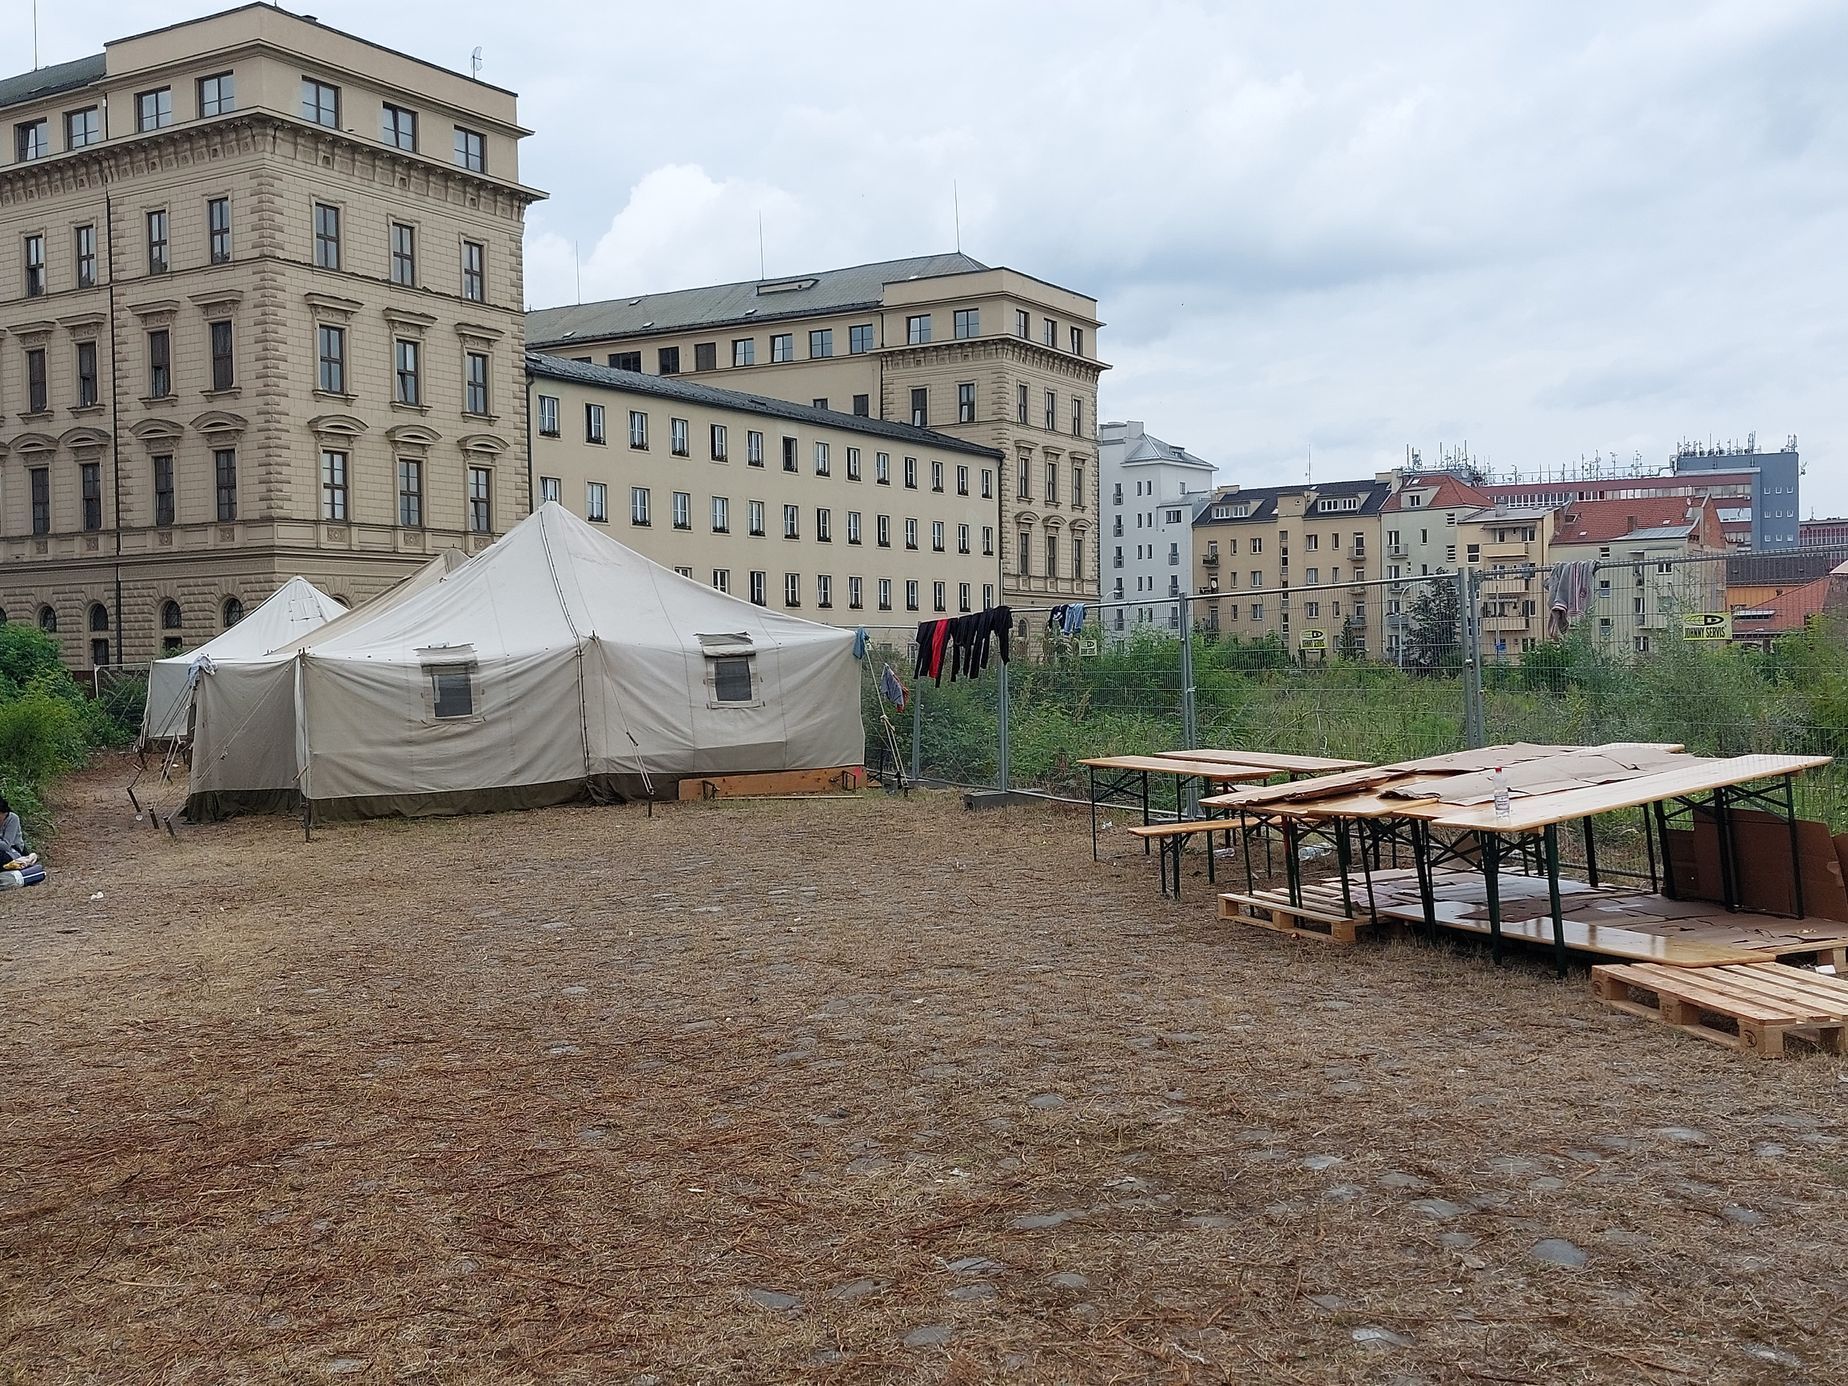 Romští uprchlíci z Ukrajiny v Brně